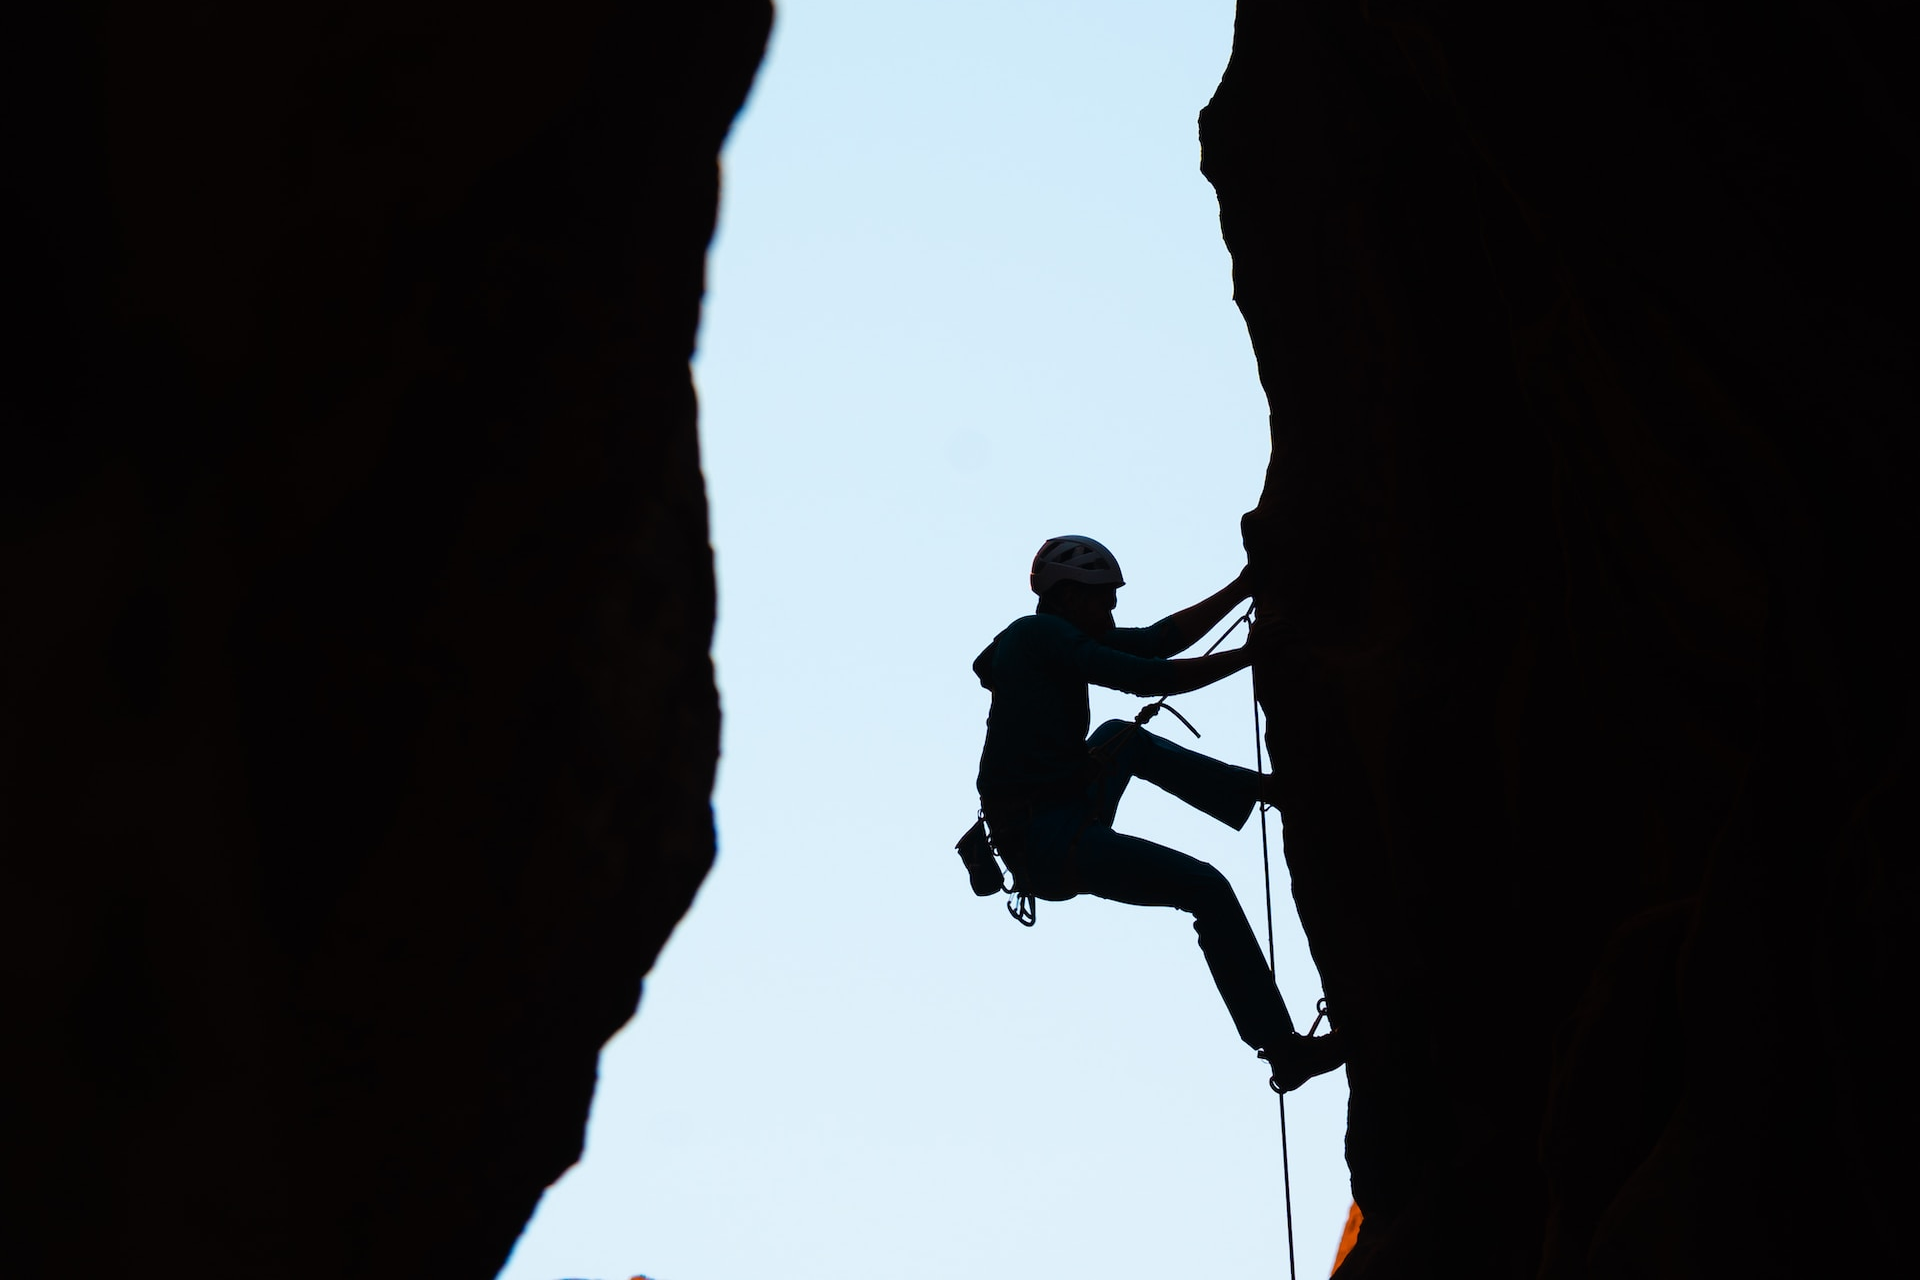 Climber climbing a rock surface